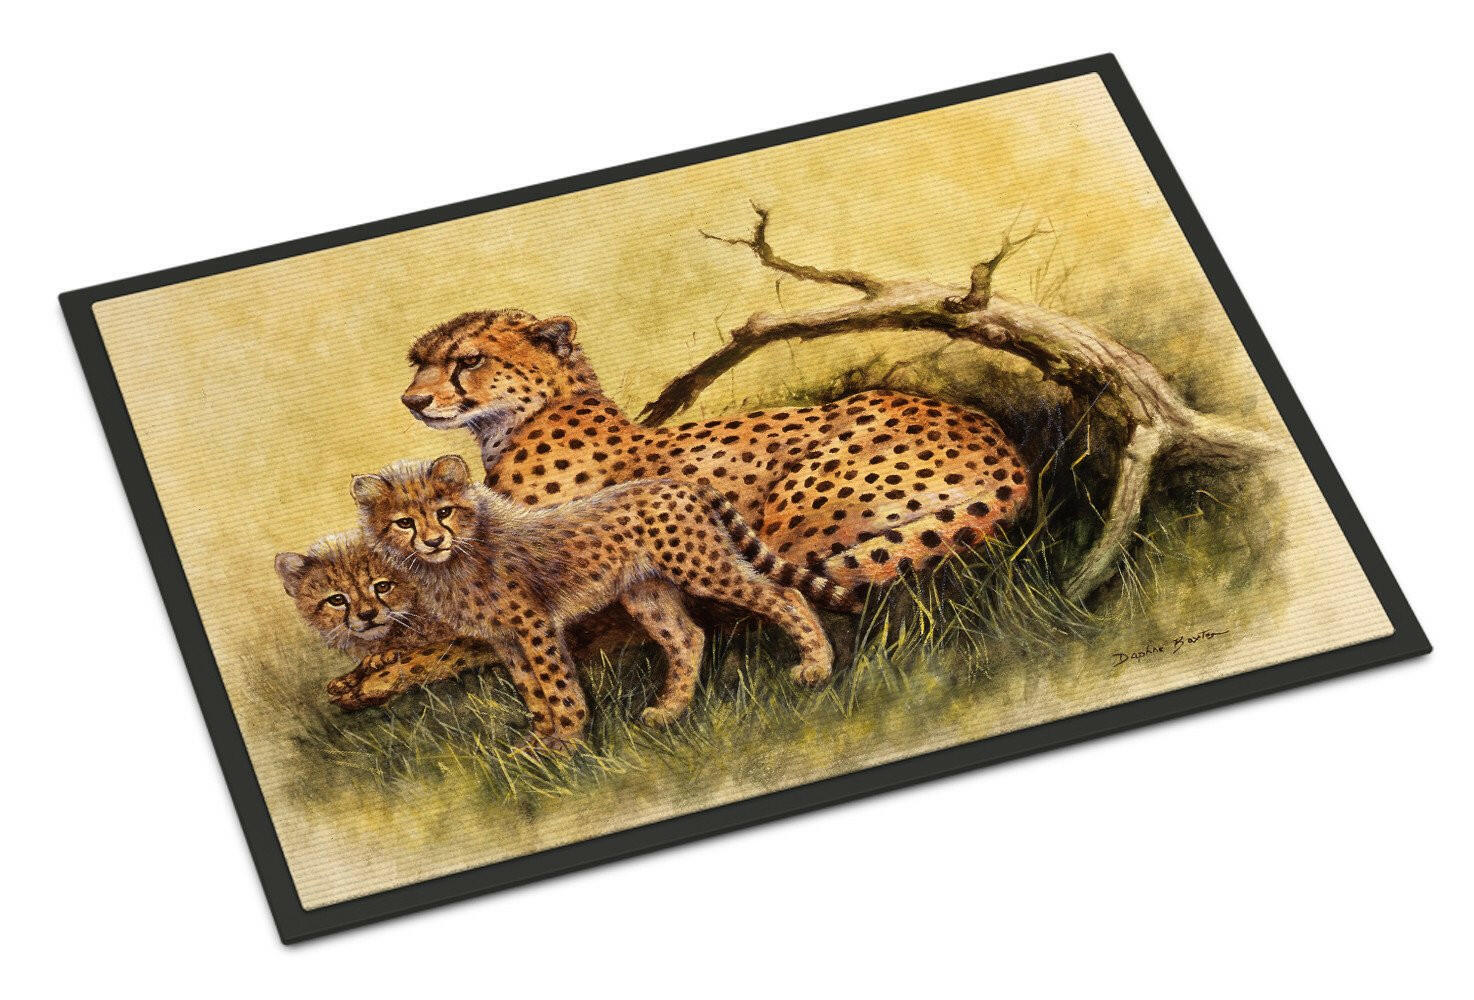 Cheetahs by Daphne Baxter Indoor or Outdoor Mat 18x27 BDBA0113MAT - the-store.com